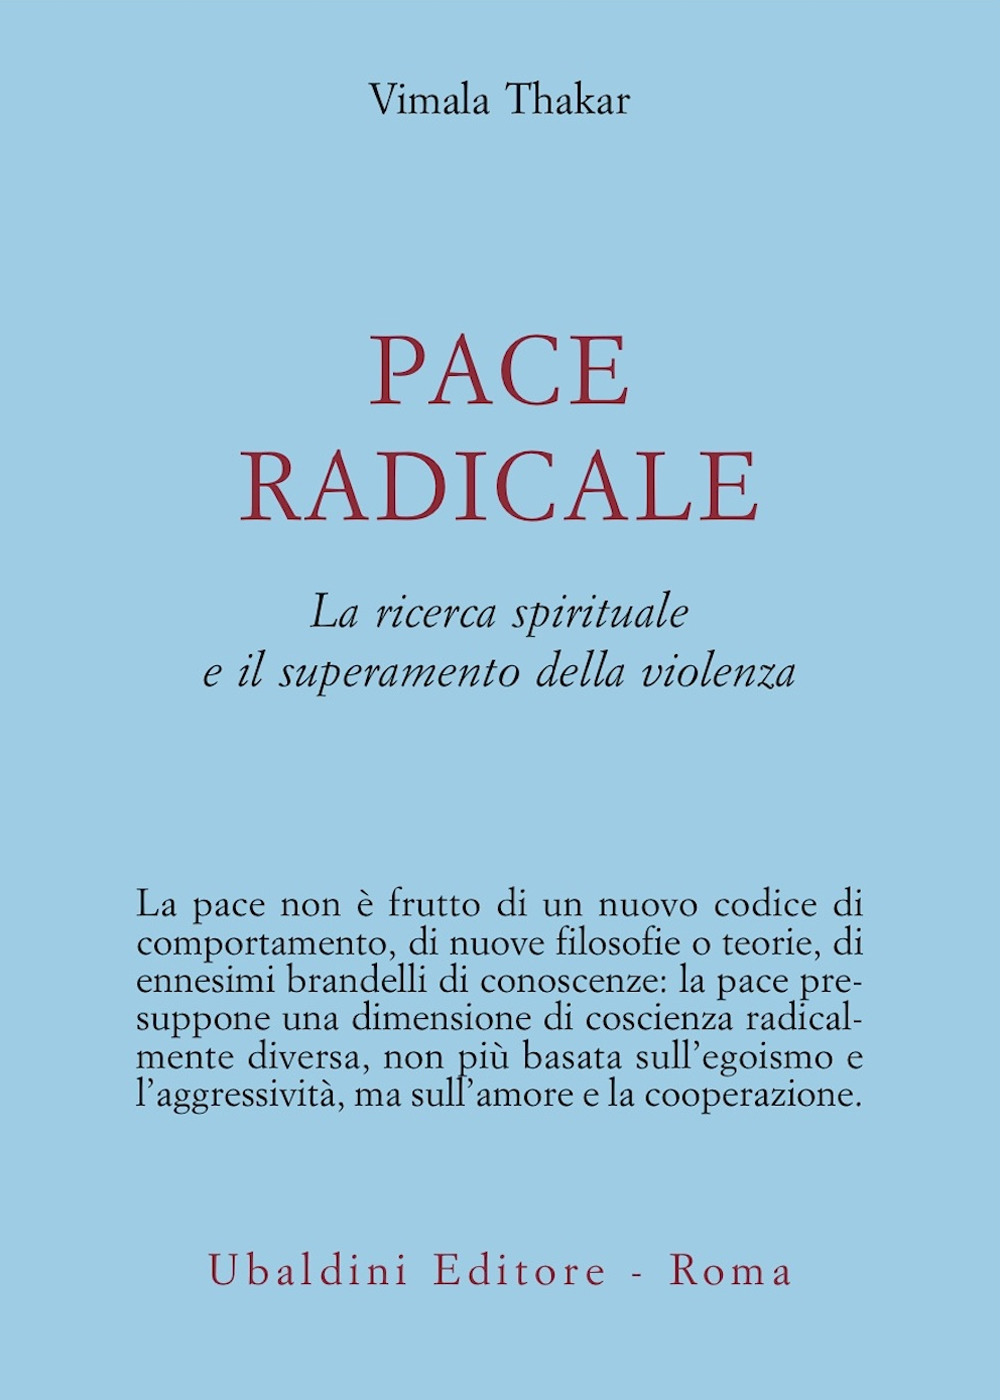 Pace radicale. La ricerca spirituale e il superamento della violenza